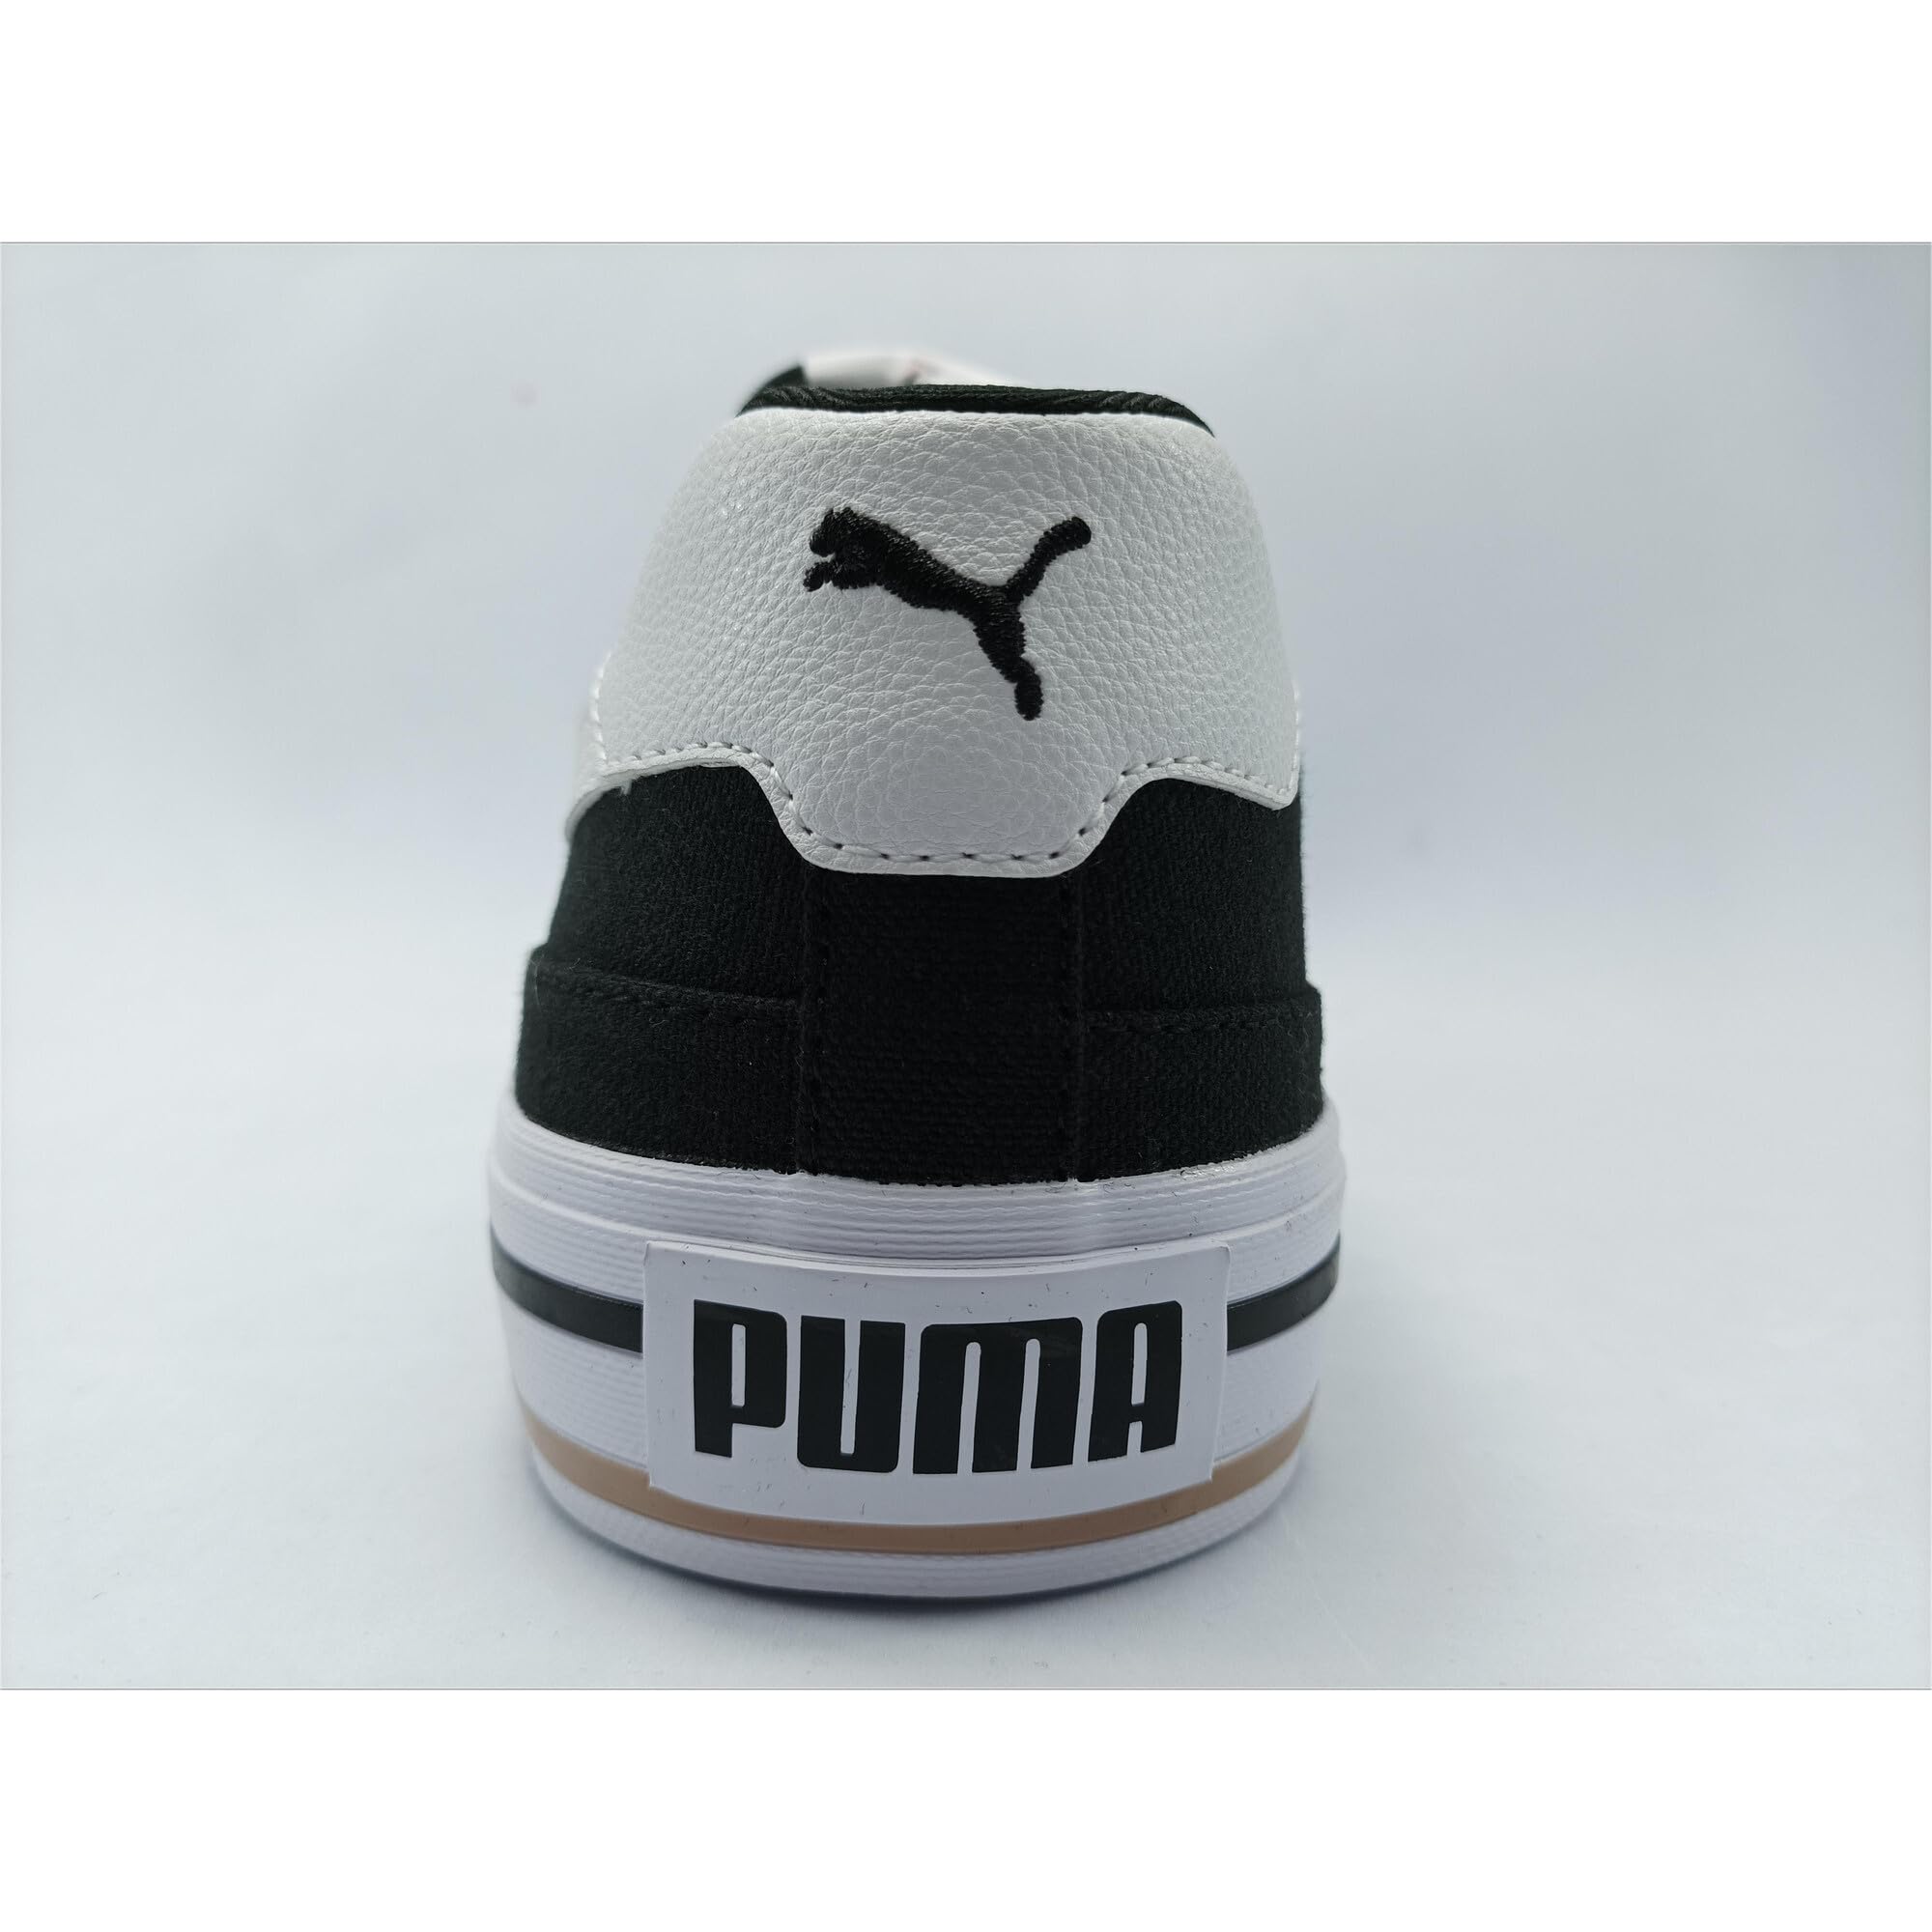 PUMA Men's Court Classic Vulc Sneaker